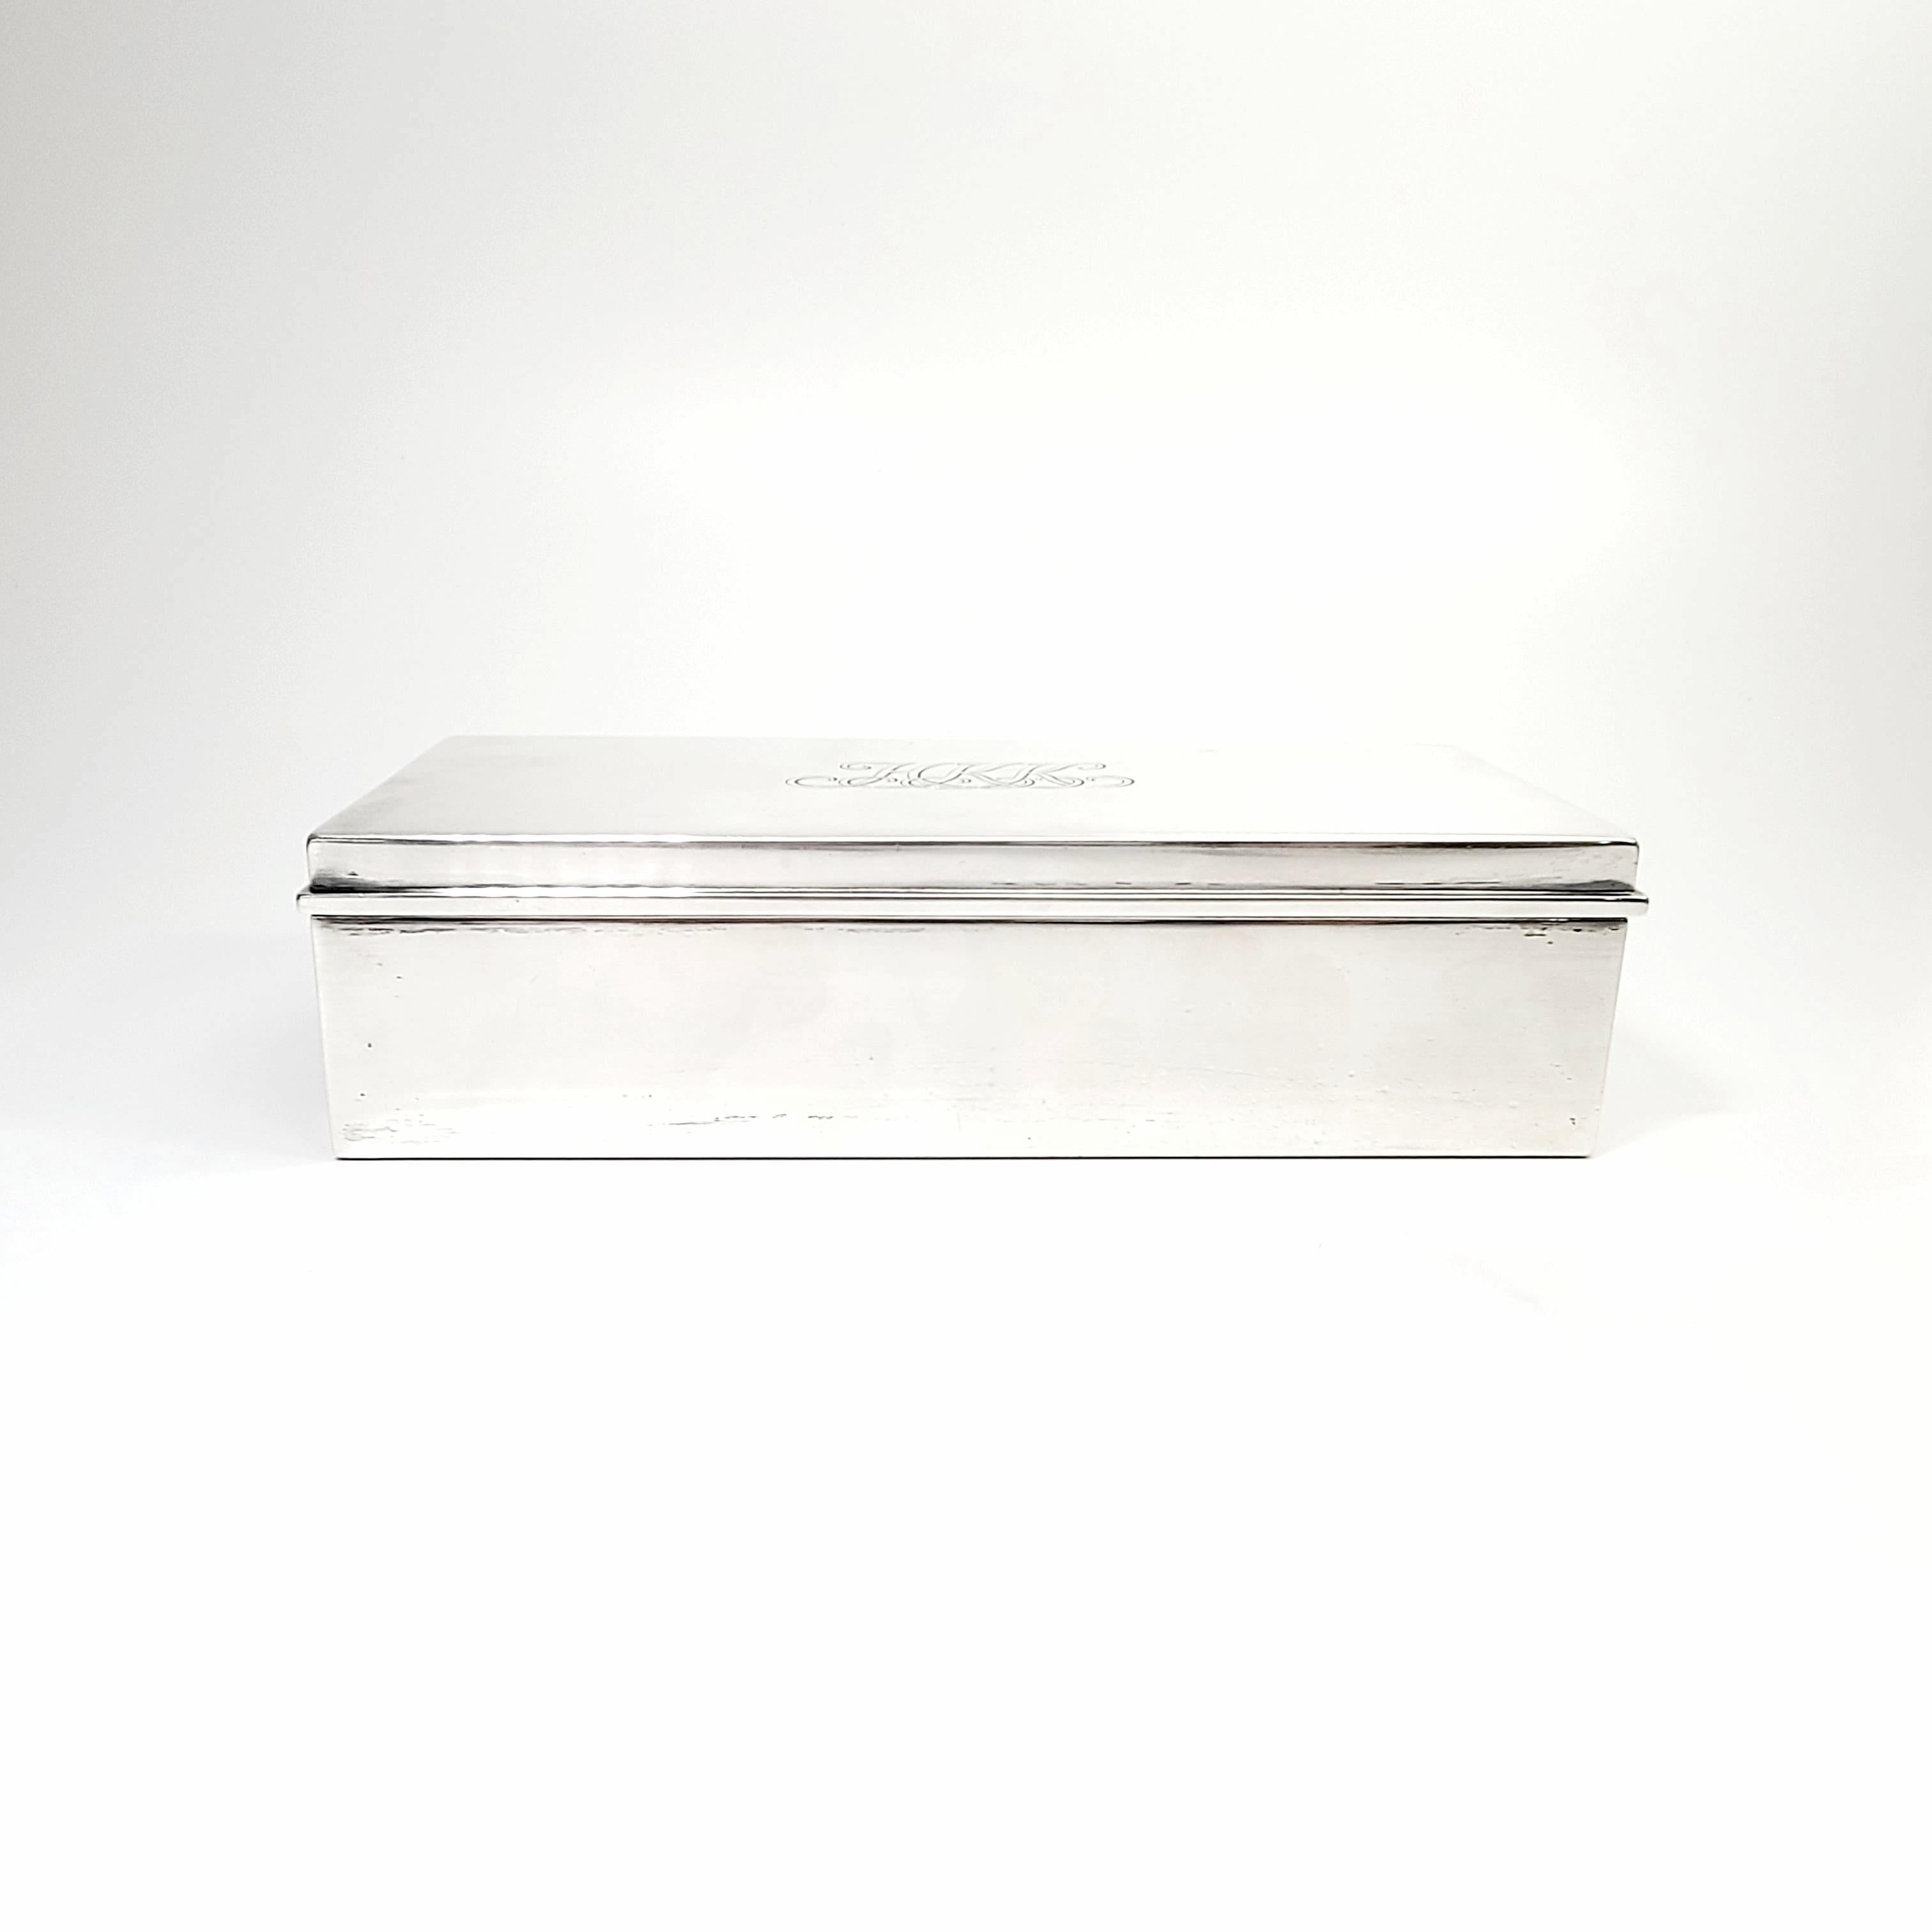 Vintage Tiffany & Co Sterling Silber Zigarette oder Schreibtisch Box.

Ein klassischer, mit Zedernholz ausgekleideter Kasten mit einfachen und zeitlosen Linien. Hergestellt unter der Leitung von Louis deBebian Moore (1947-1956). Enthält keine